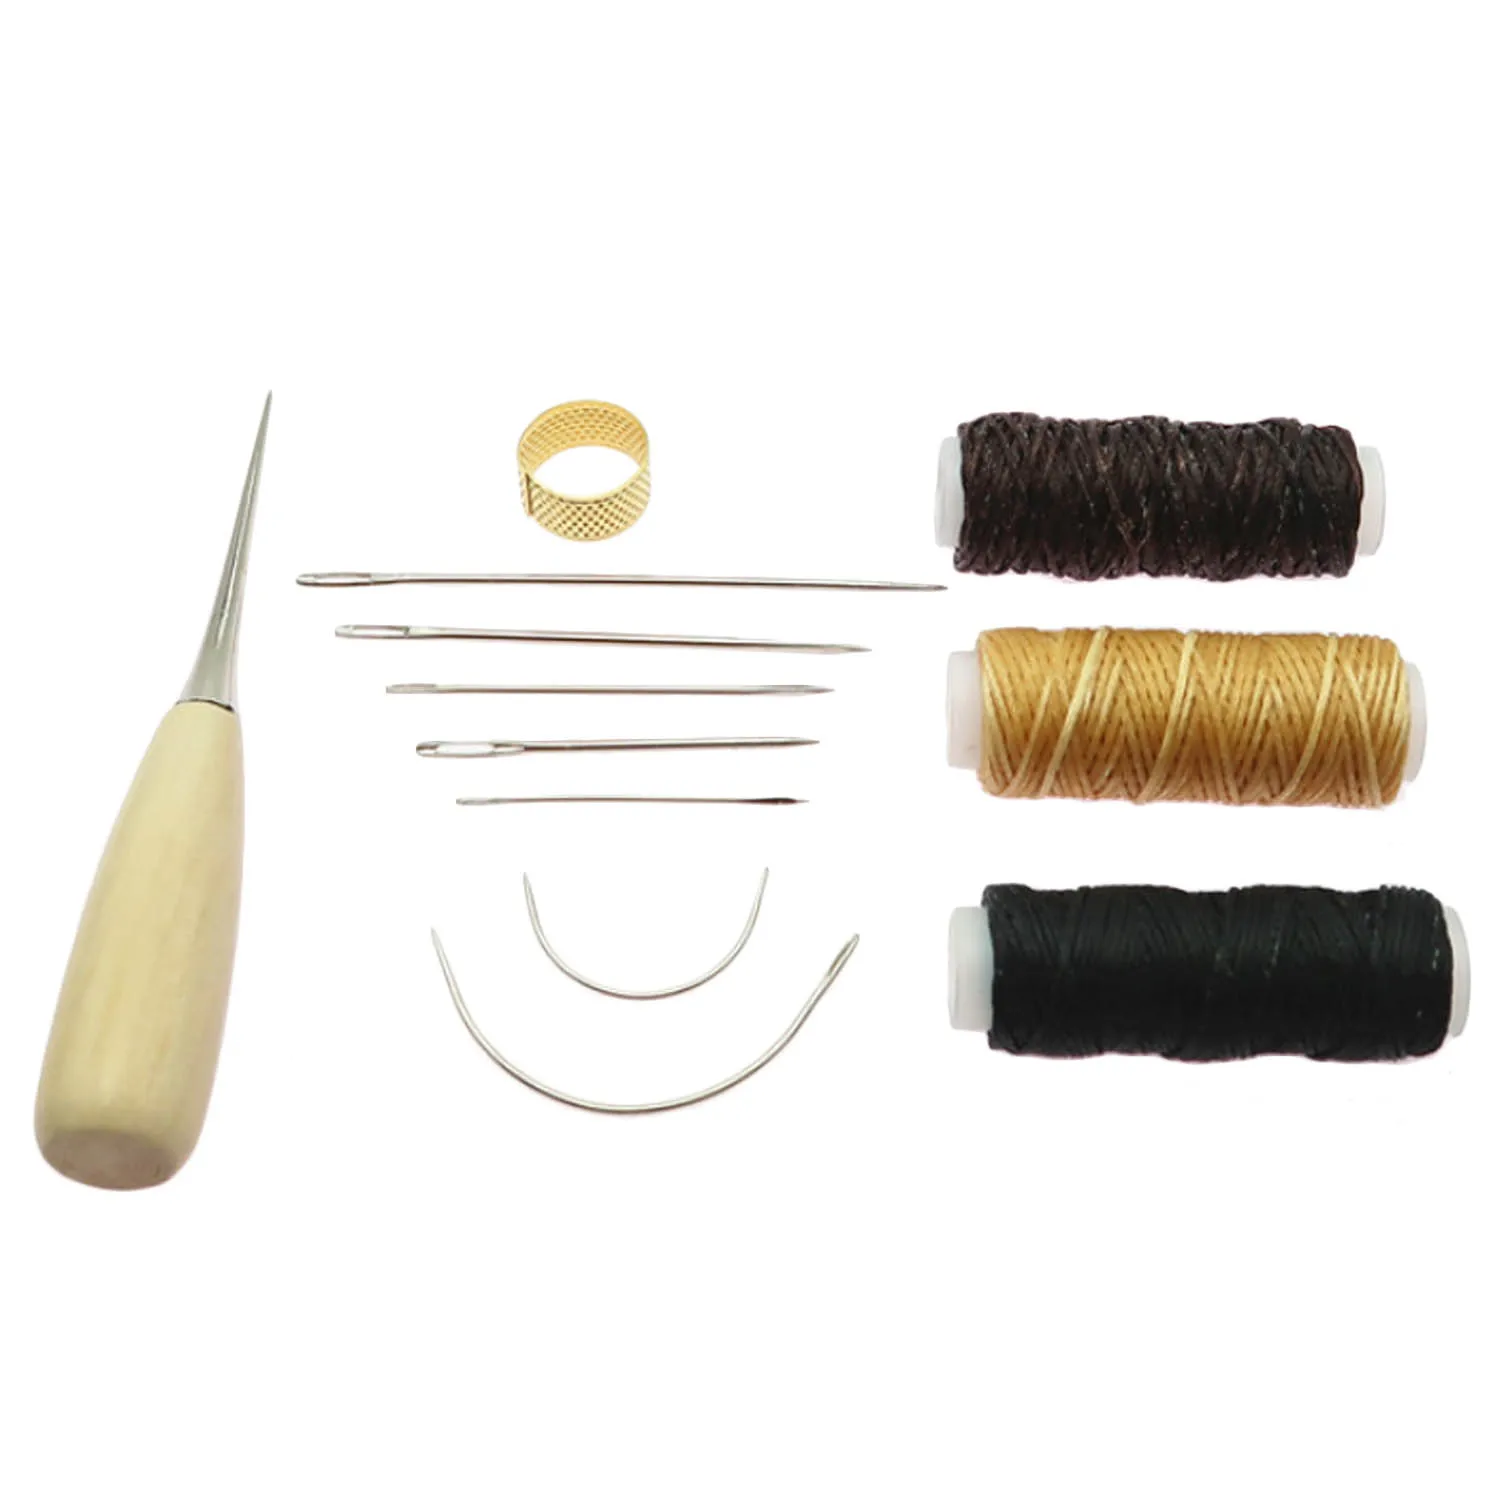 12 шт. набор инструментов для шитья кожи с ручными швейными иглами шило наперсток вощеная нить для рукоделия шитья